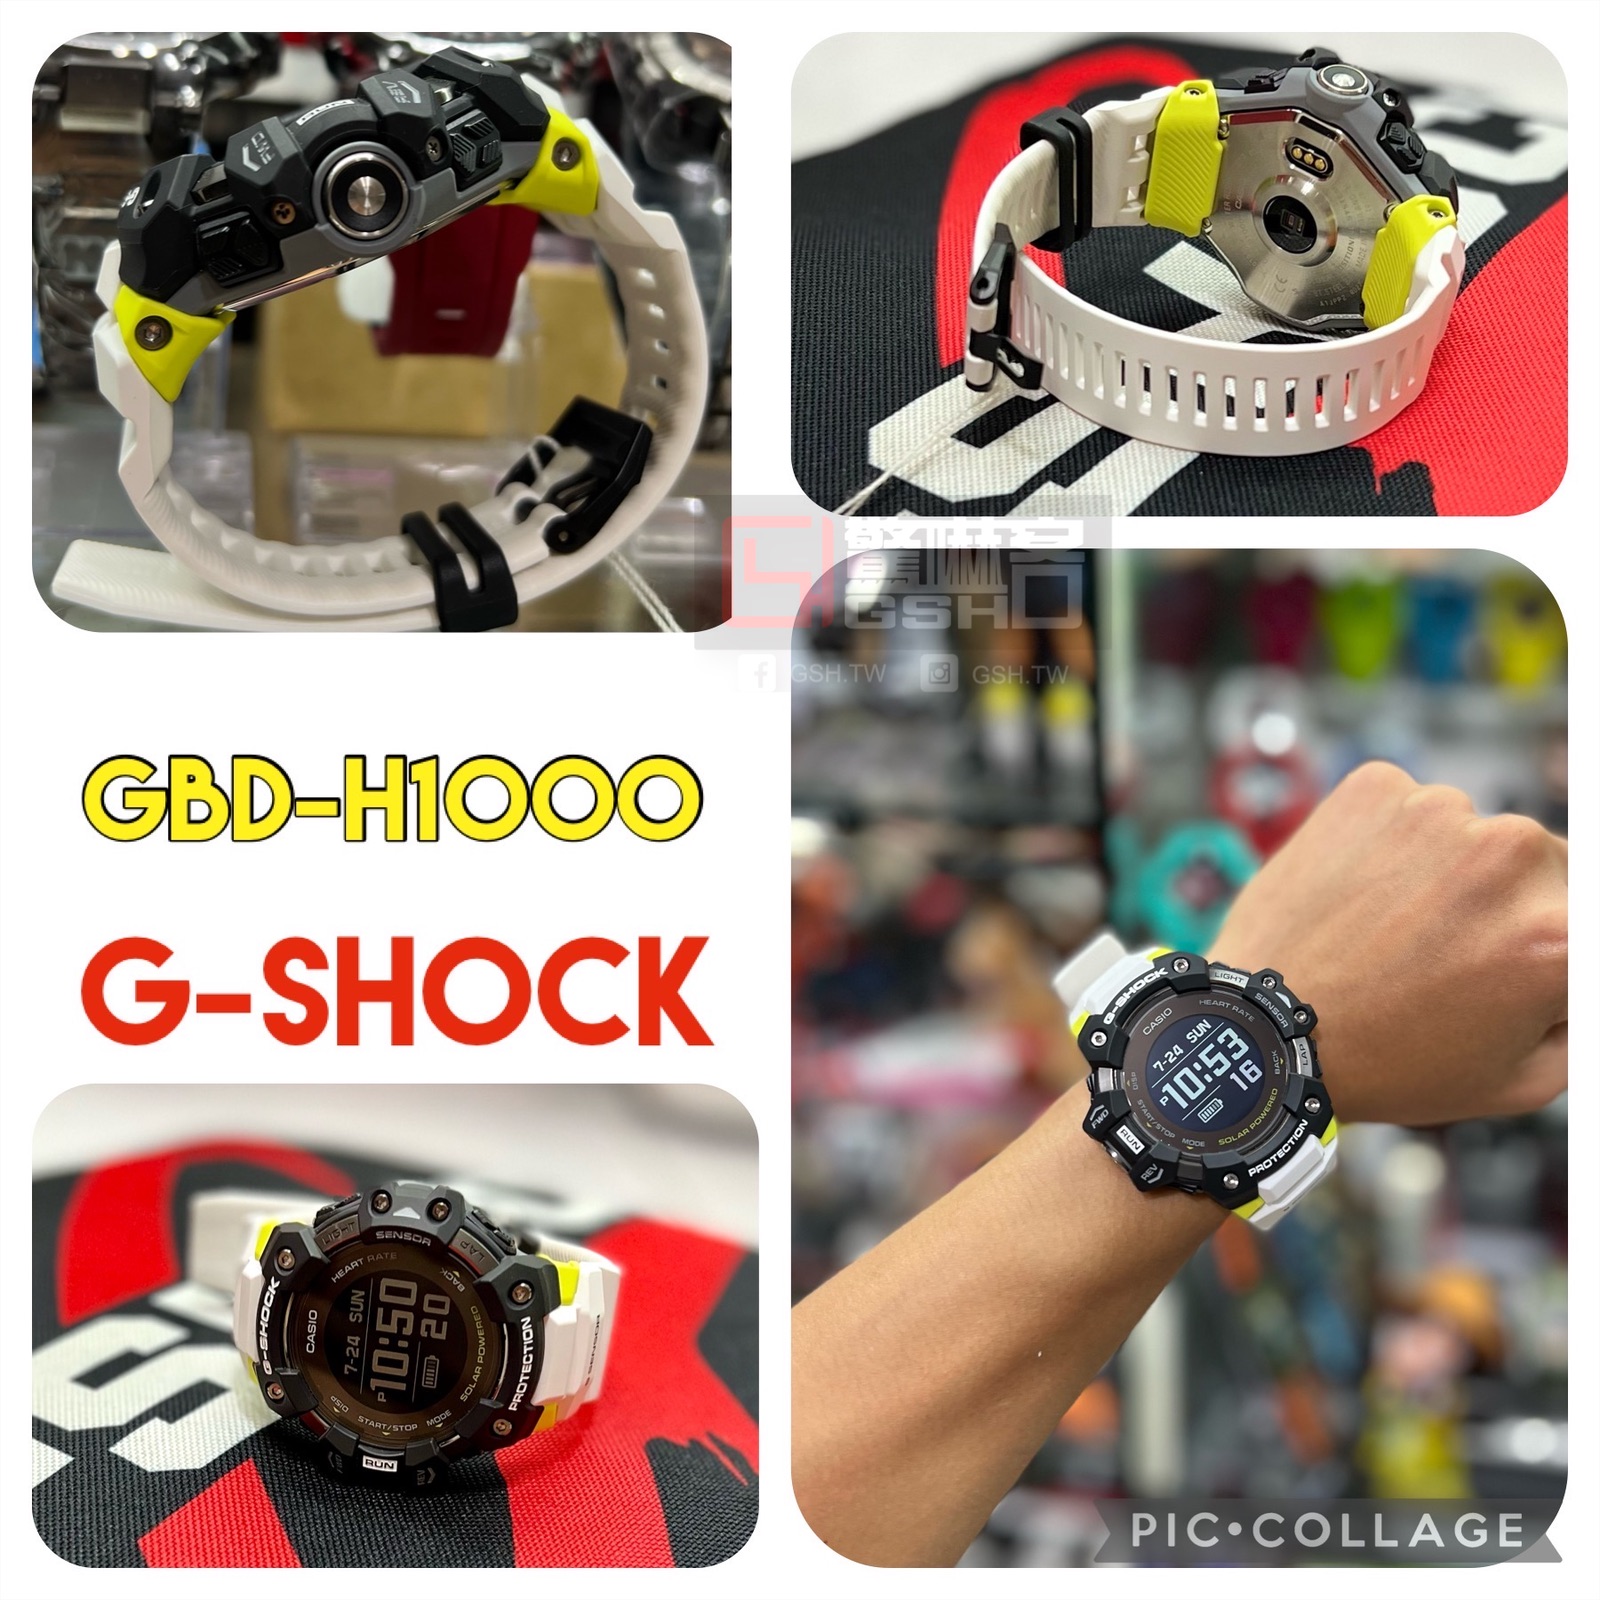 G-SHOCK 心率偵測 GPS 藍芽 計步氣壓 高度 溫度 羅盤 黑白配色 GBD-H1000-1A7